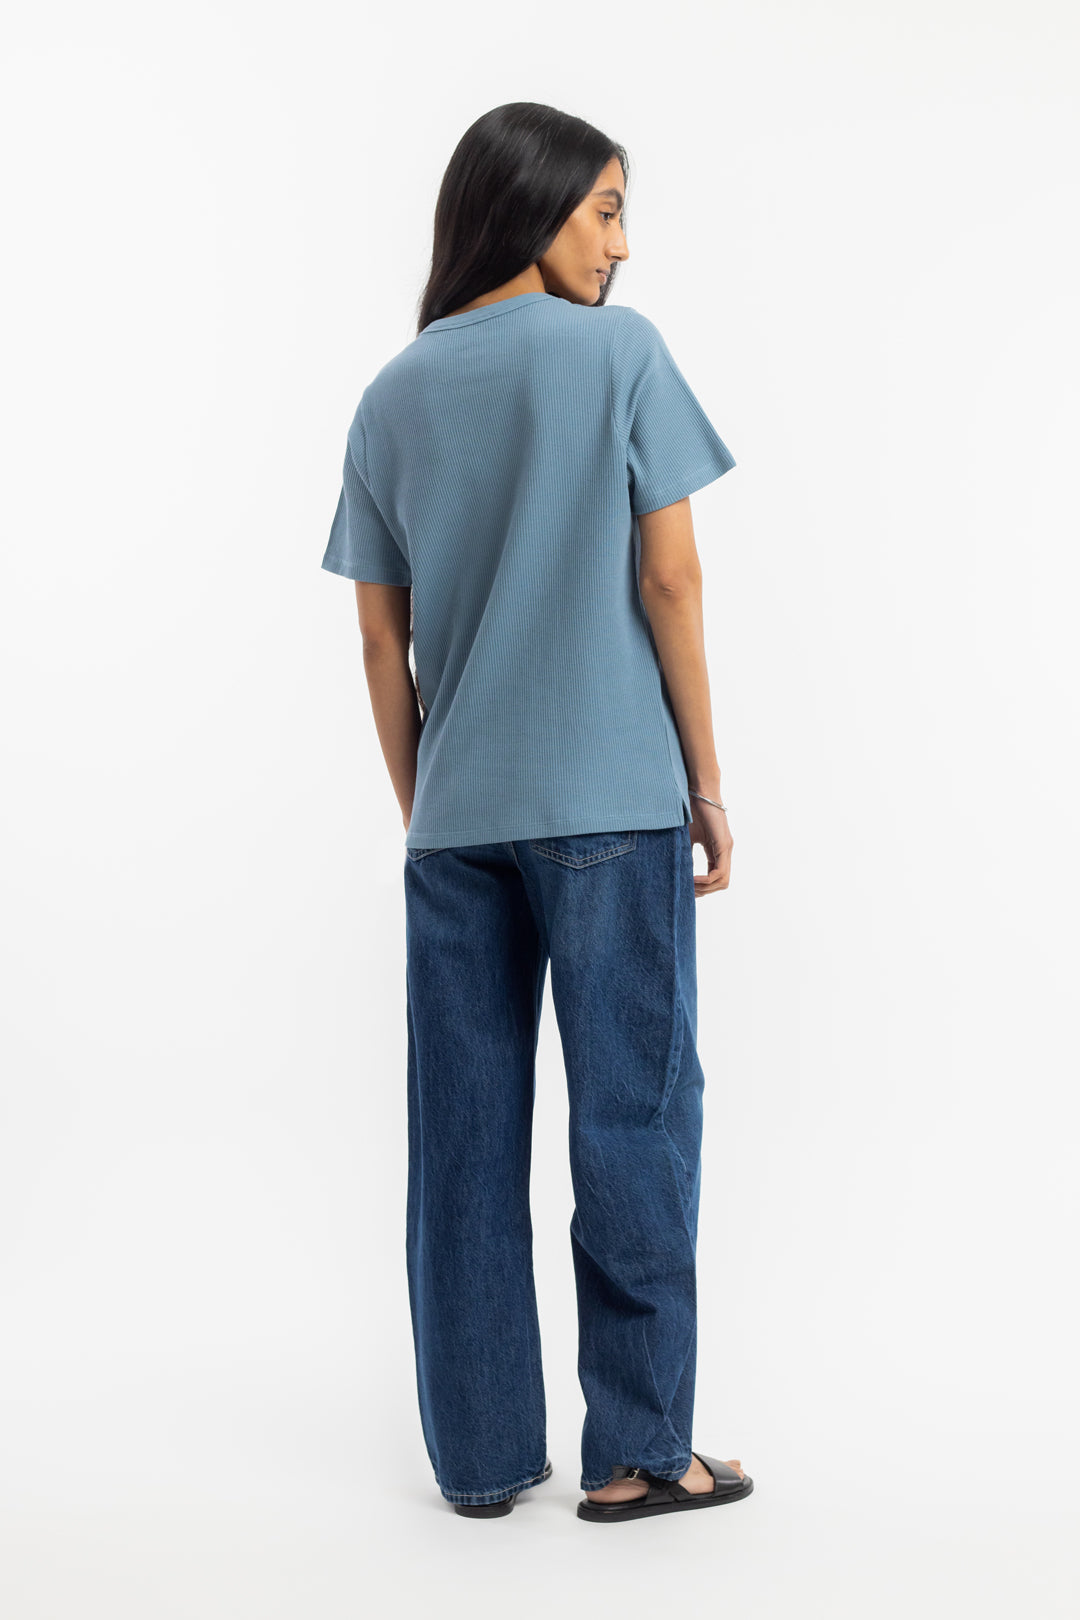 ROTHOLZ - WAFFLE T-Shirt stone blue